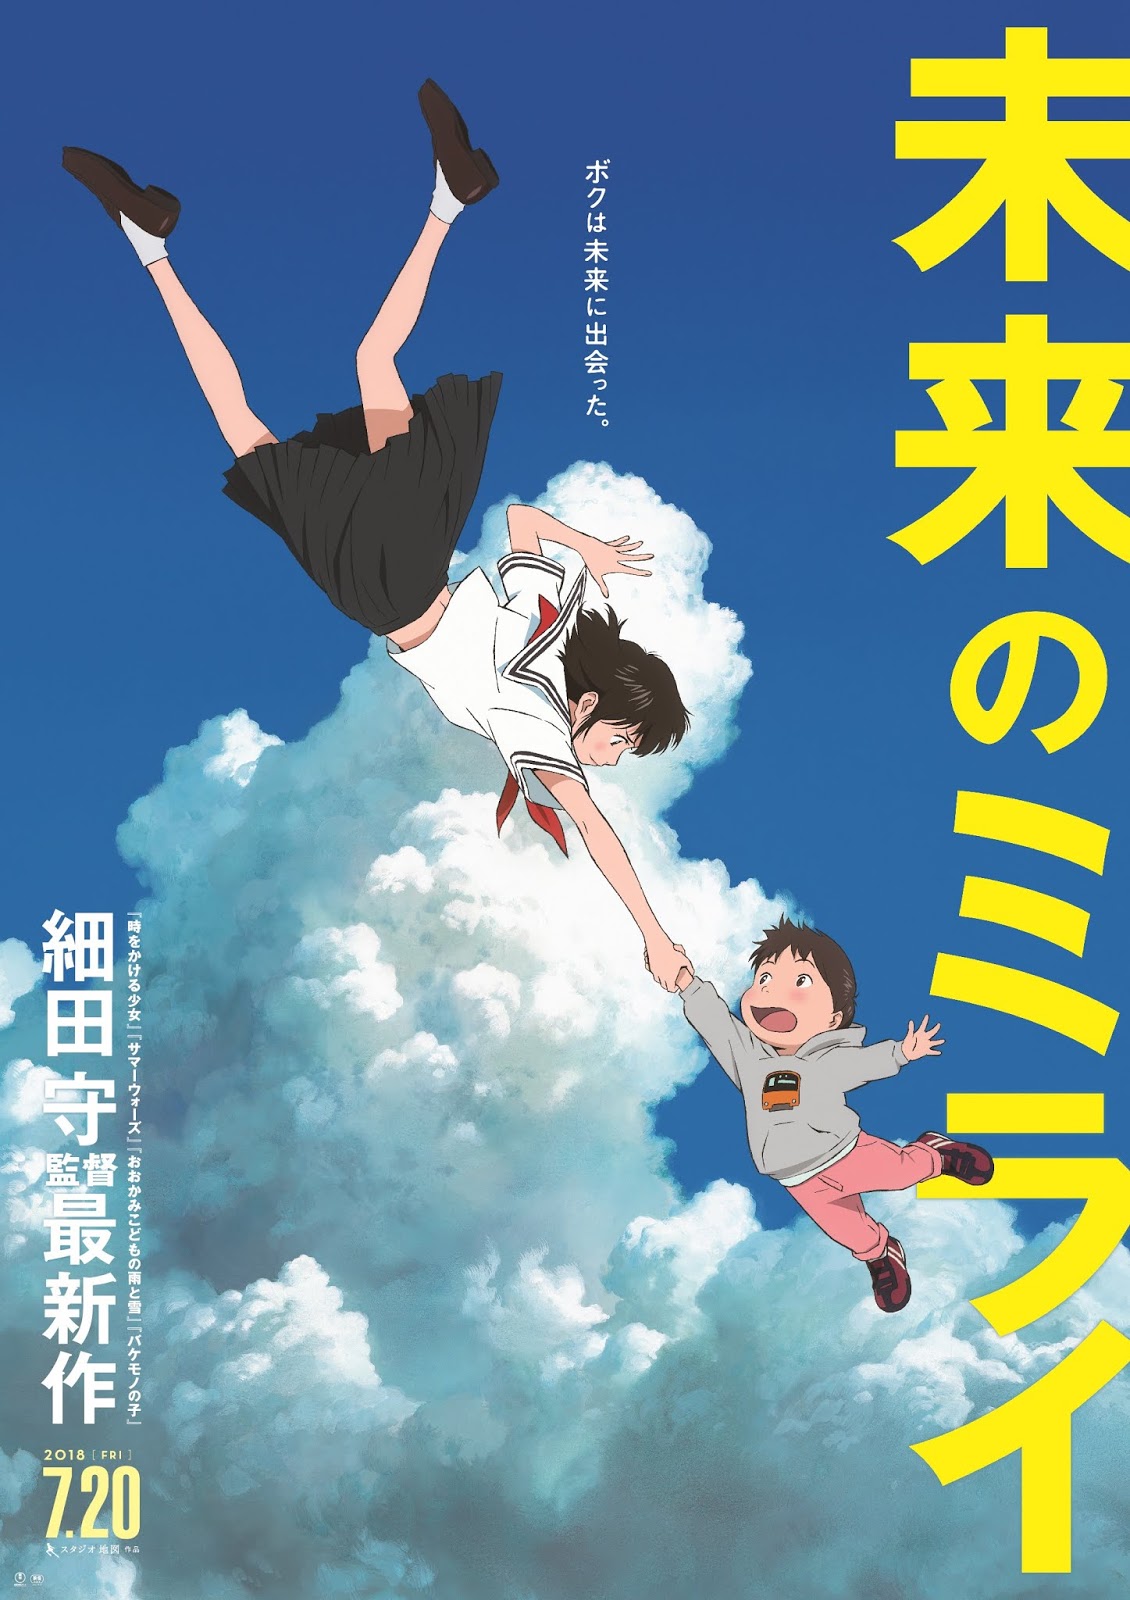 Bunny Girl Senpai: 2º filme estreia no terceiro trimestre no Japão